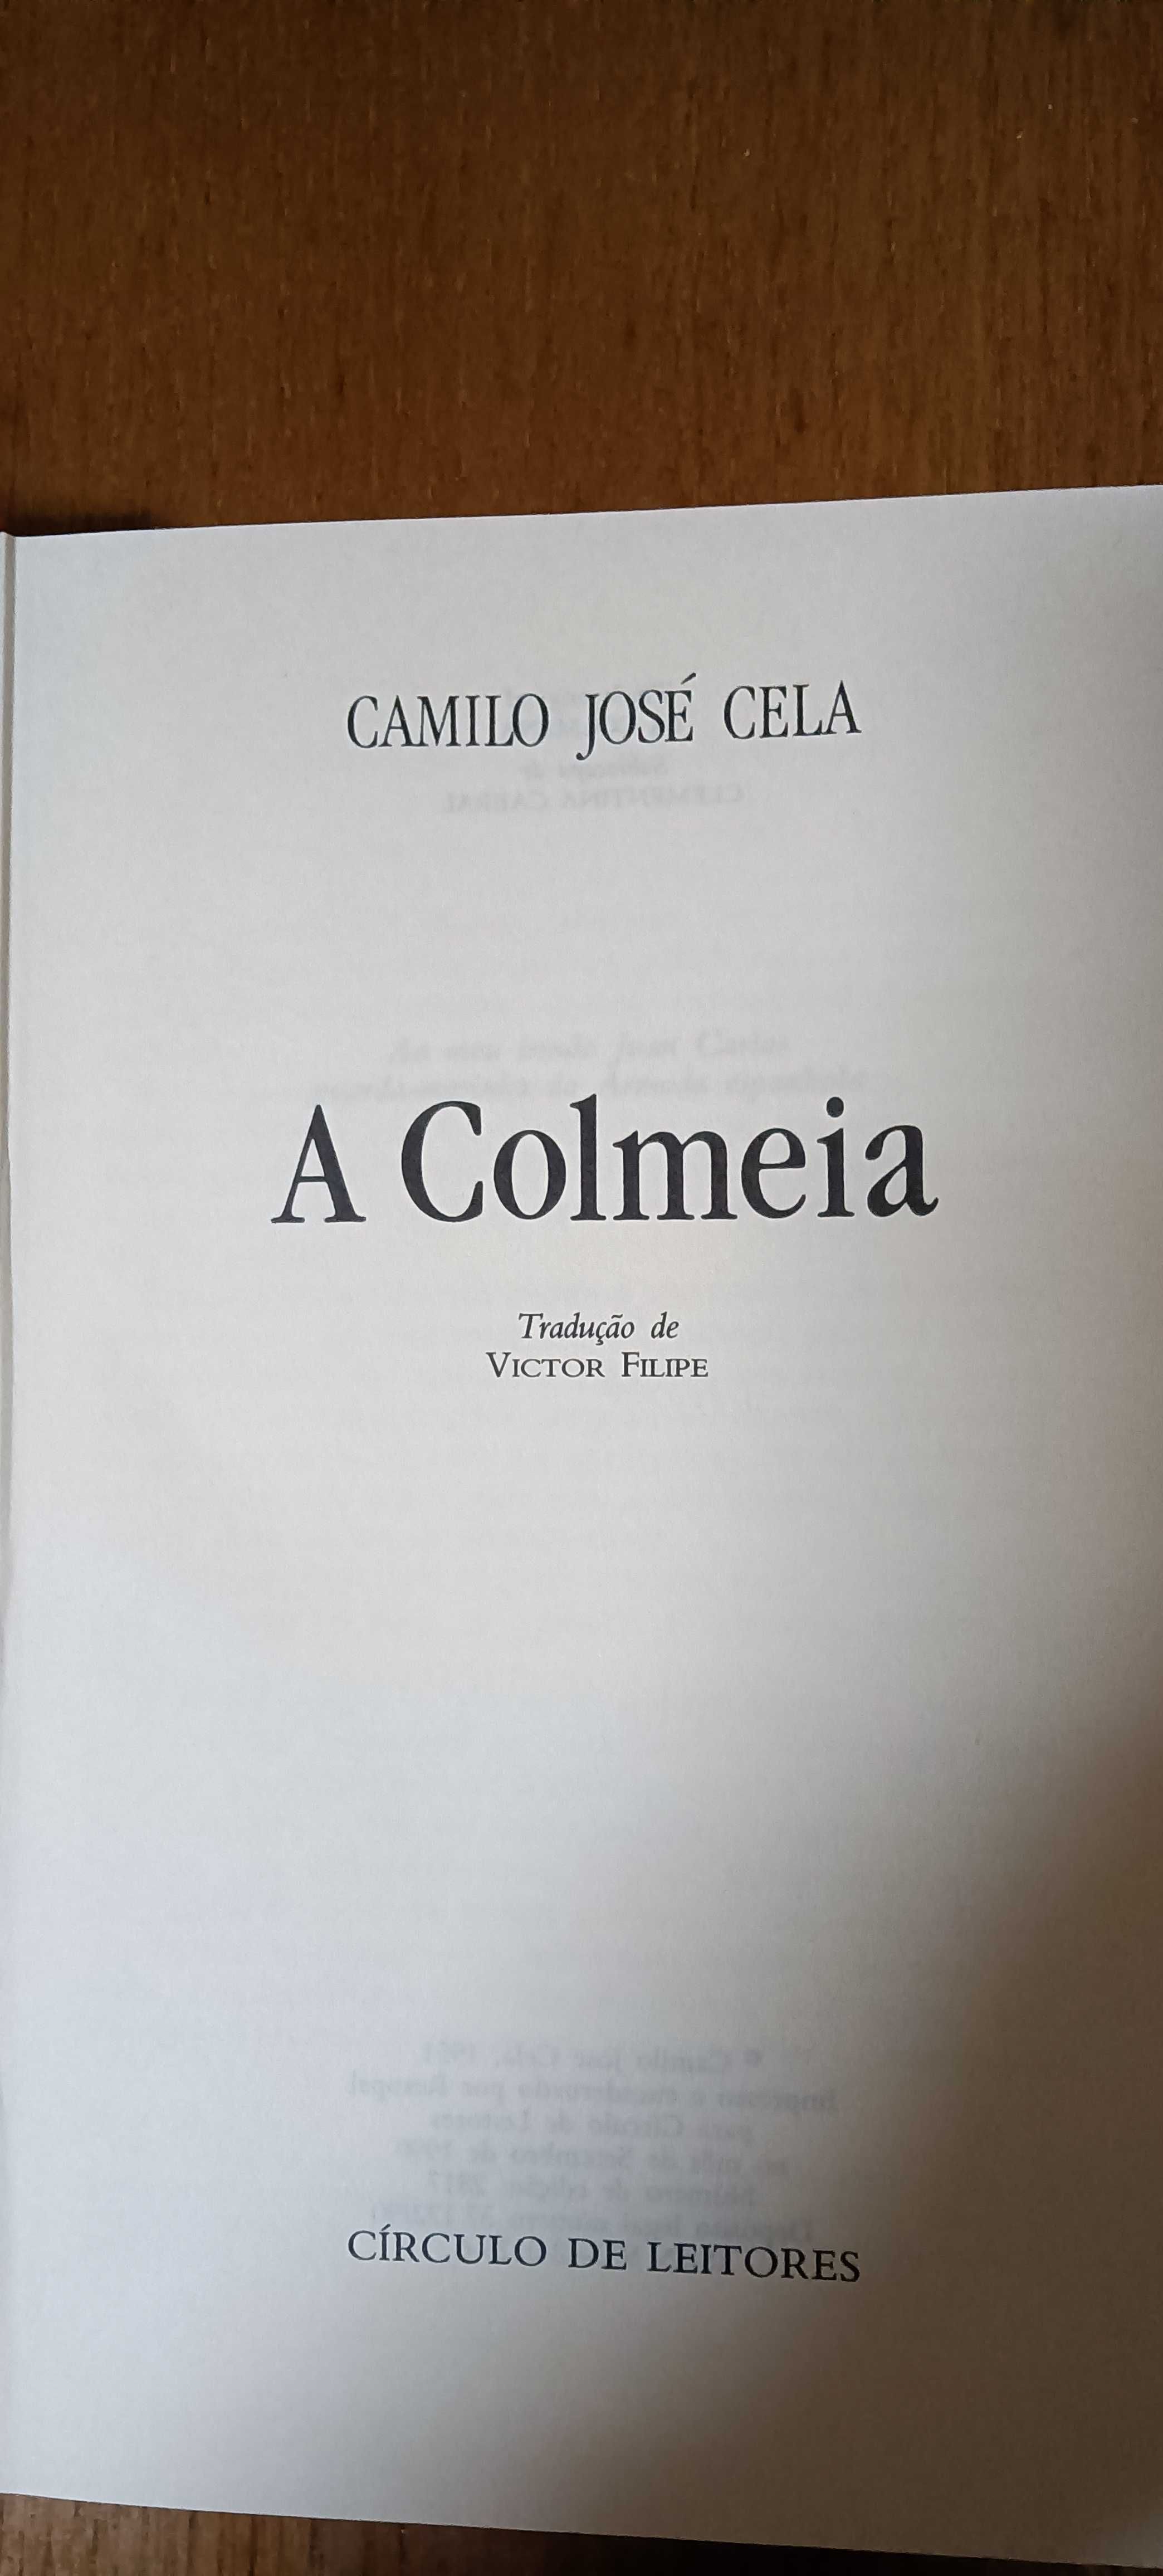 A Colmeia de Camilo José Cela